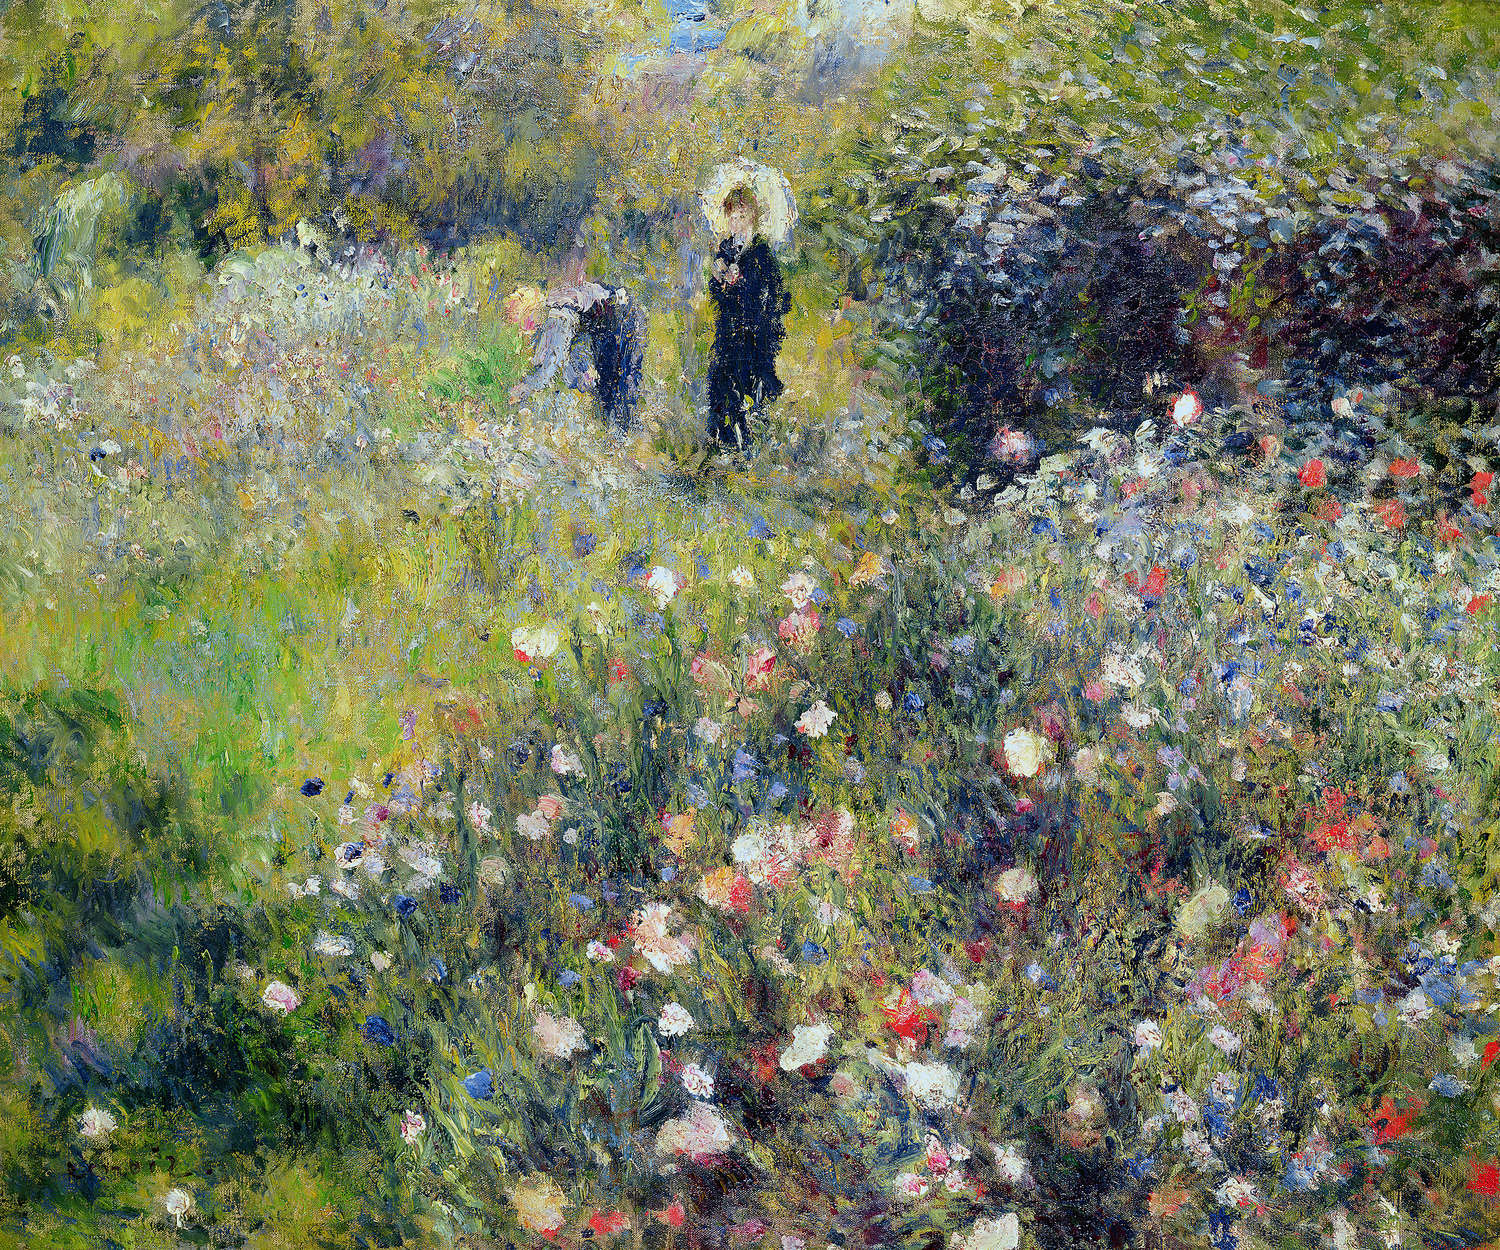             Mural "Mujer con sombrilla en un jardín" de Pierre Auguste Renoir
        